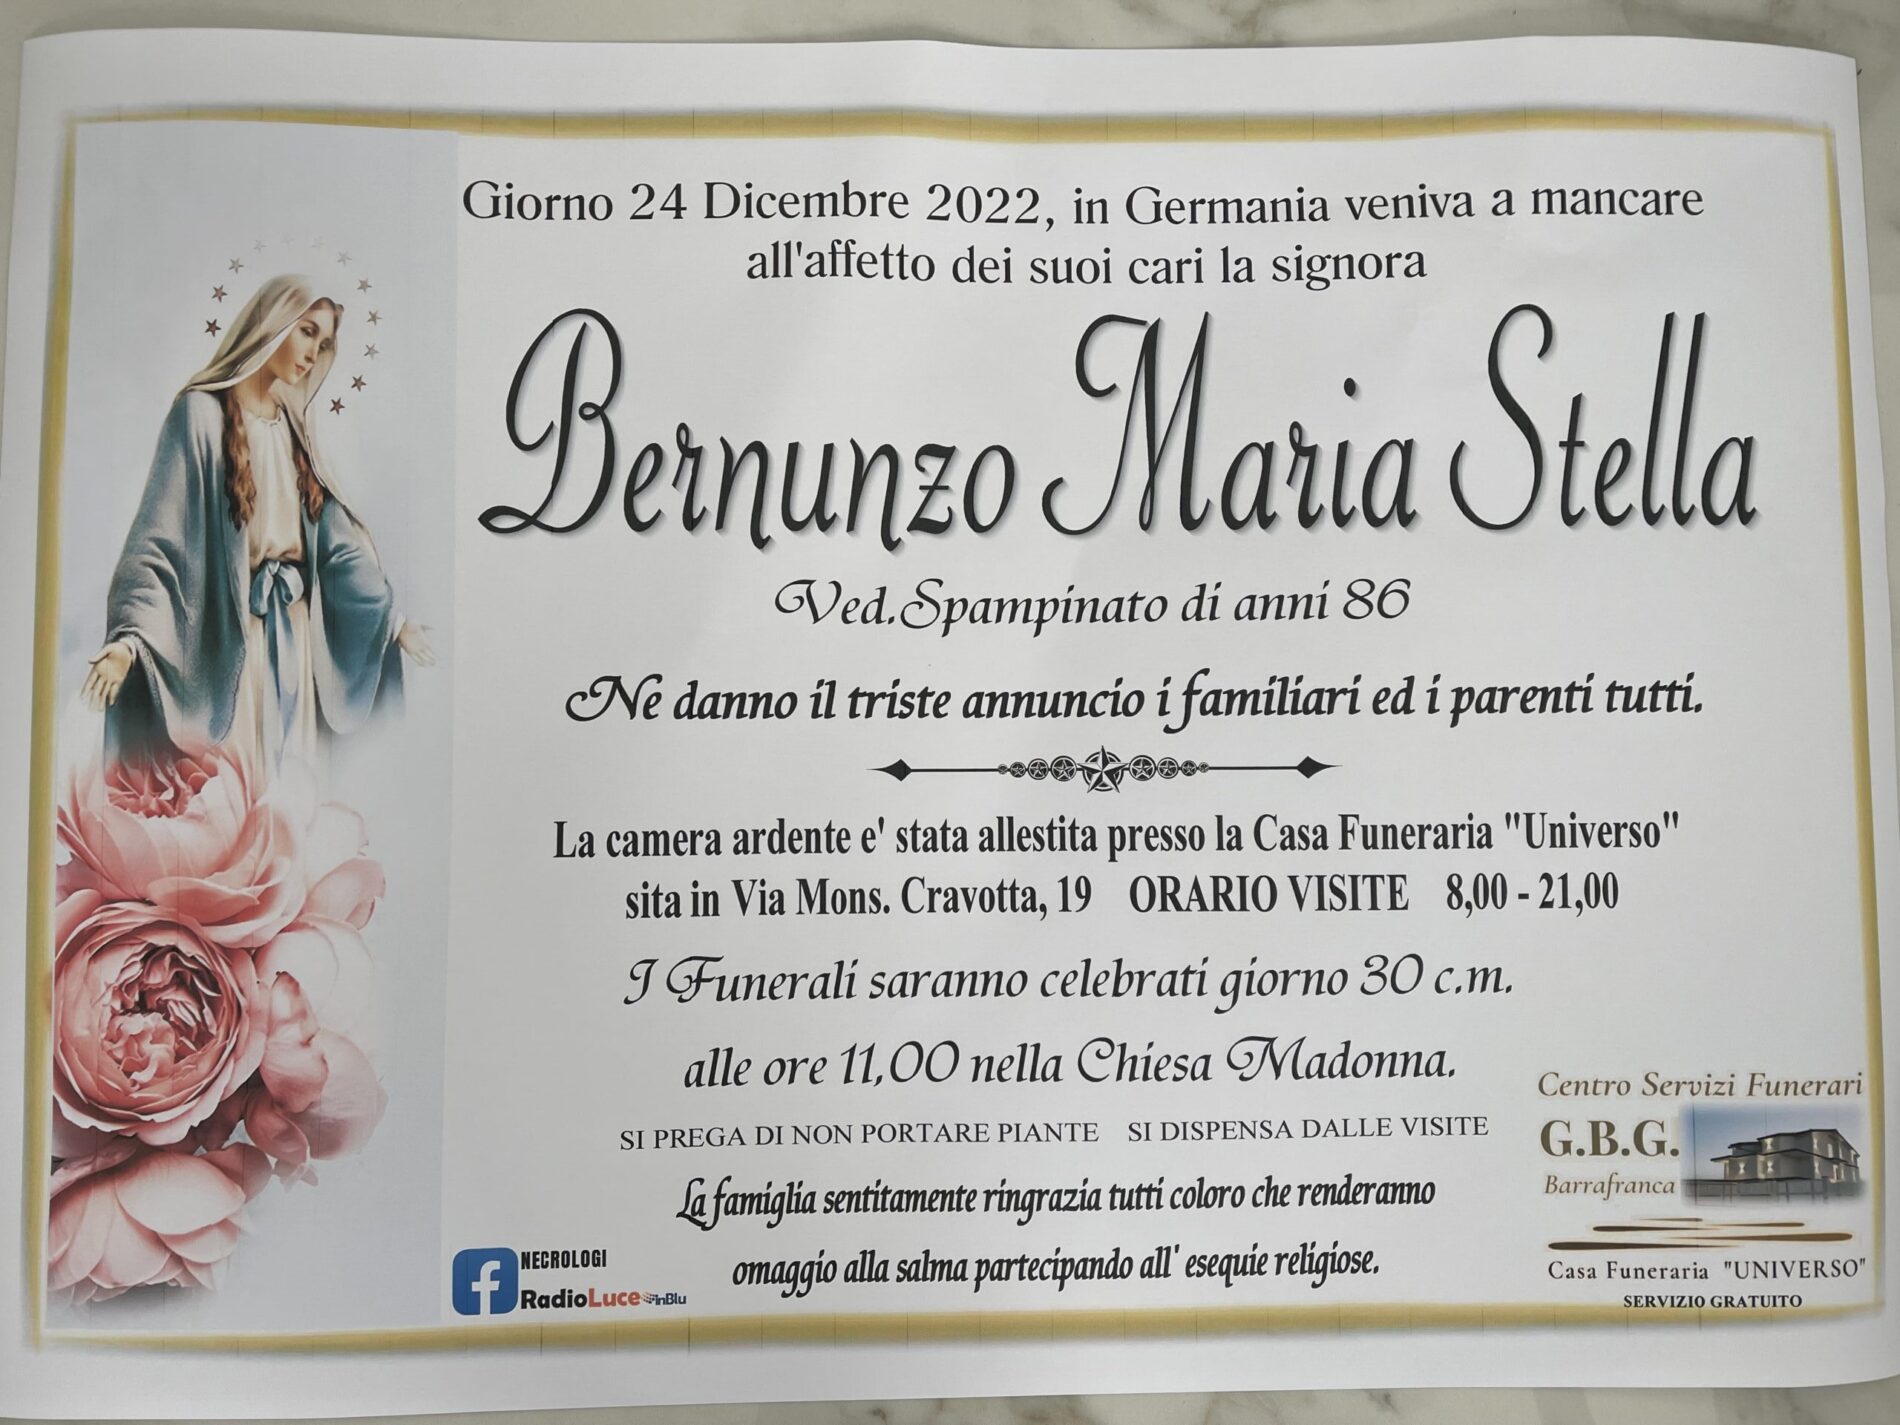 Annuncio servizi funerari agenzia G.B.G.  signora Bernunzo Maria Stella ved. Spampinato anni 86